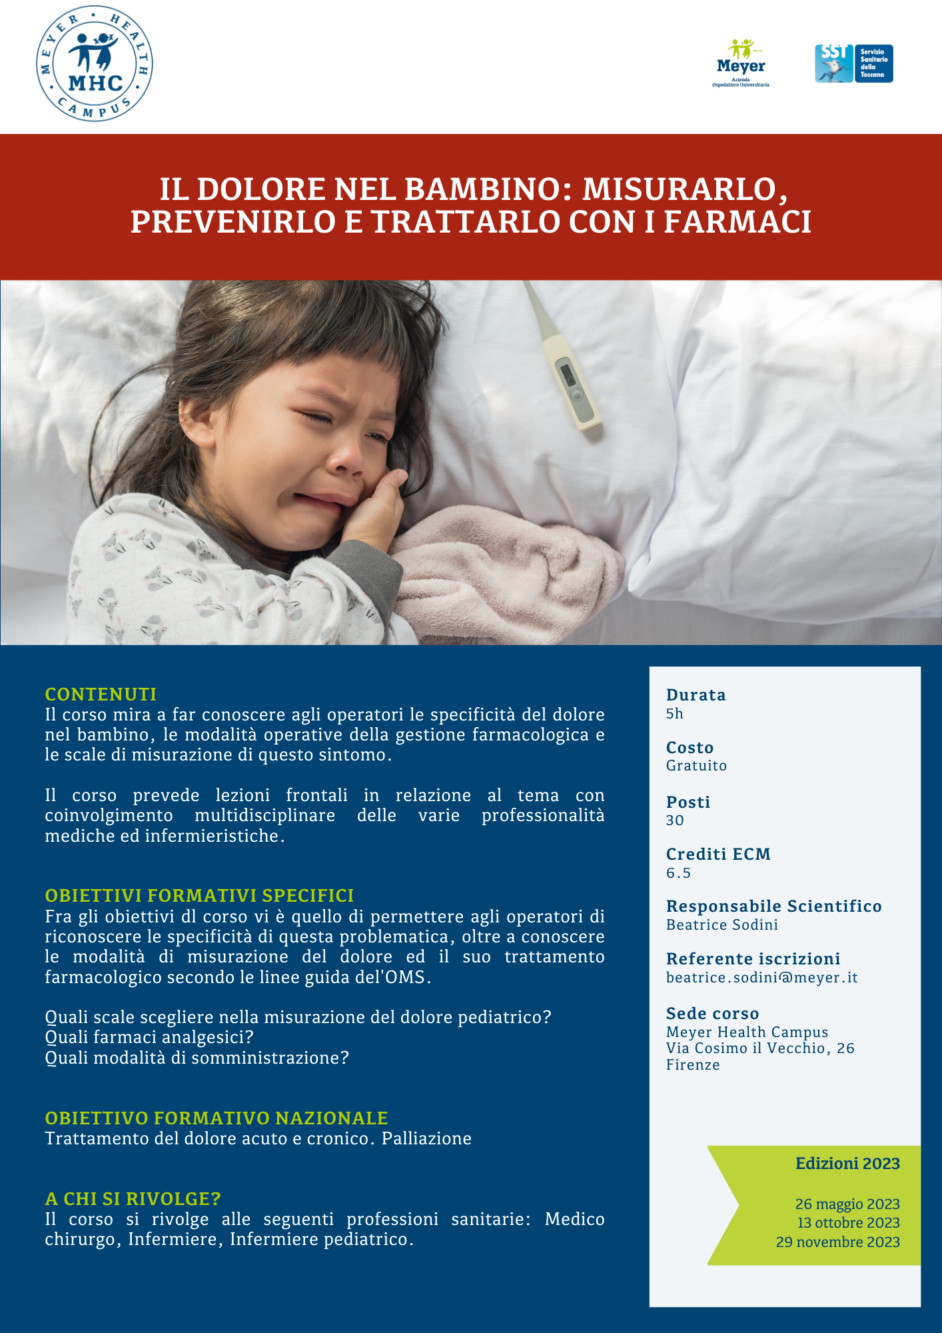 Il dolore nel bambino: misurarlo, prevenirlo e trattarlo con i farmaci (13 ottobre 2023)